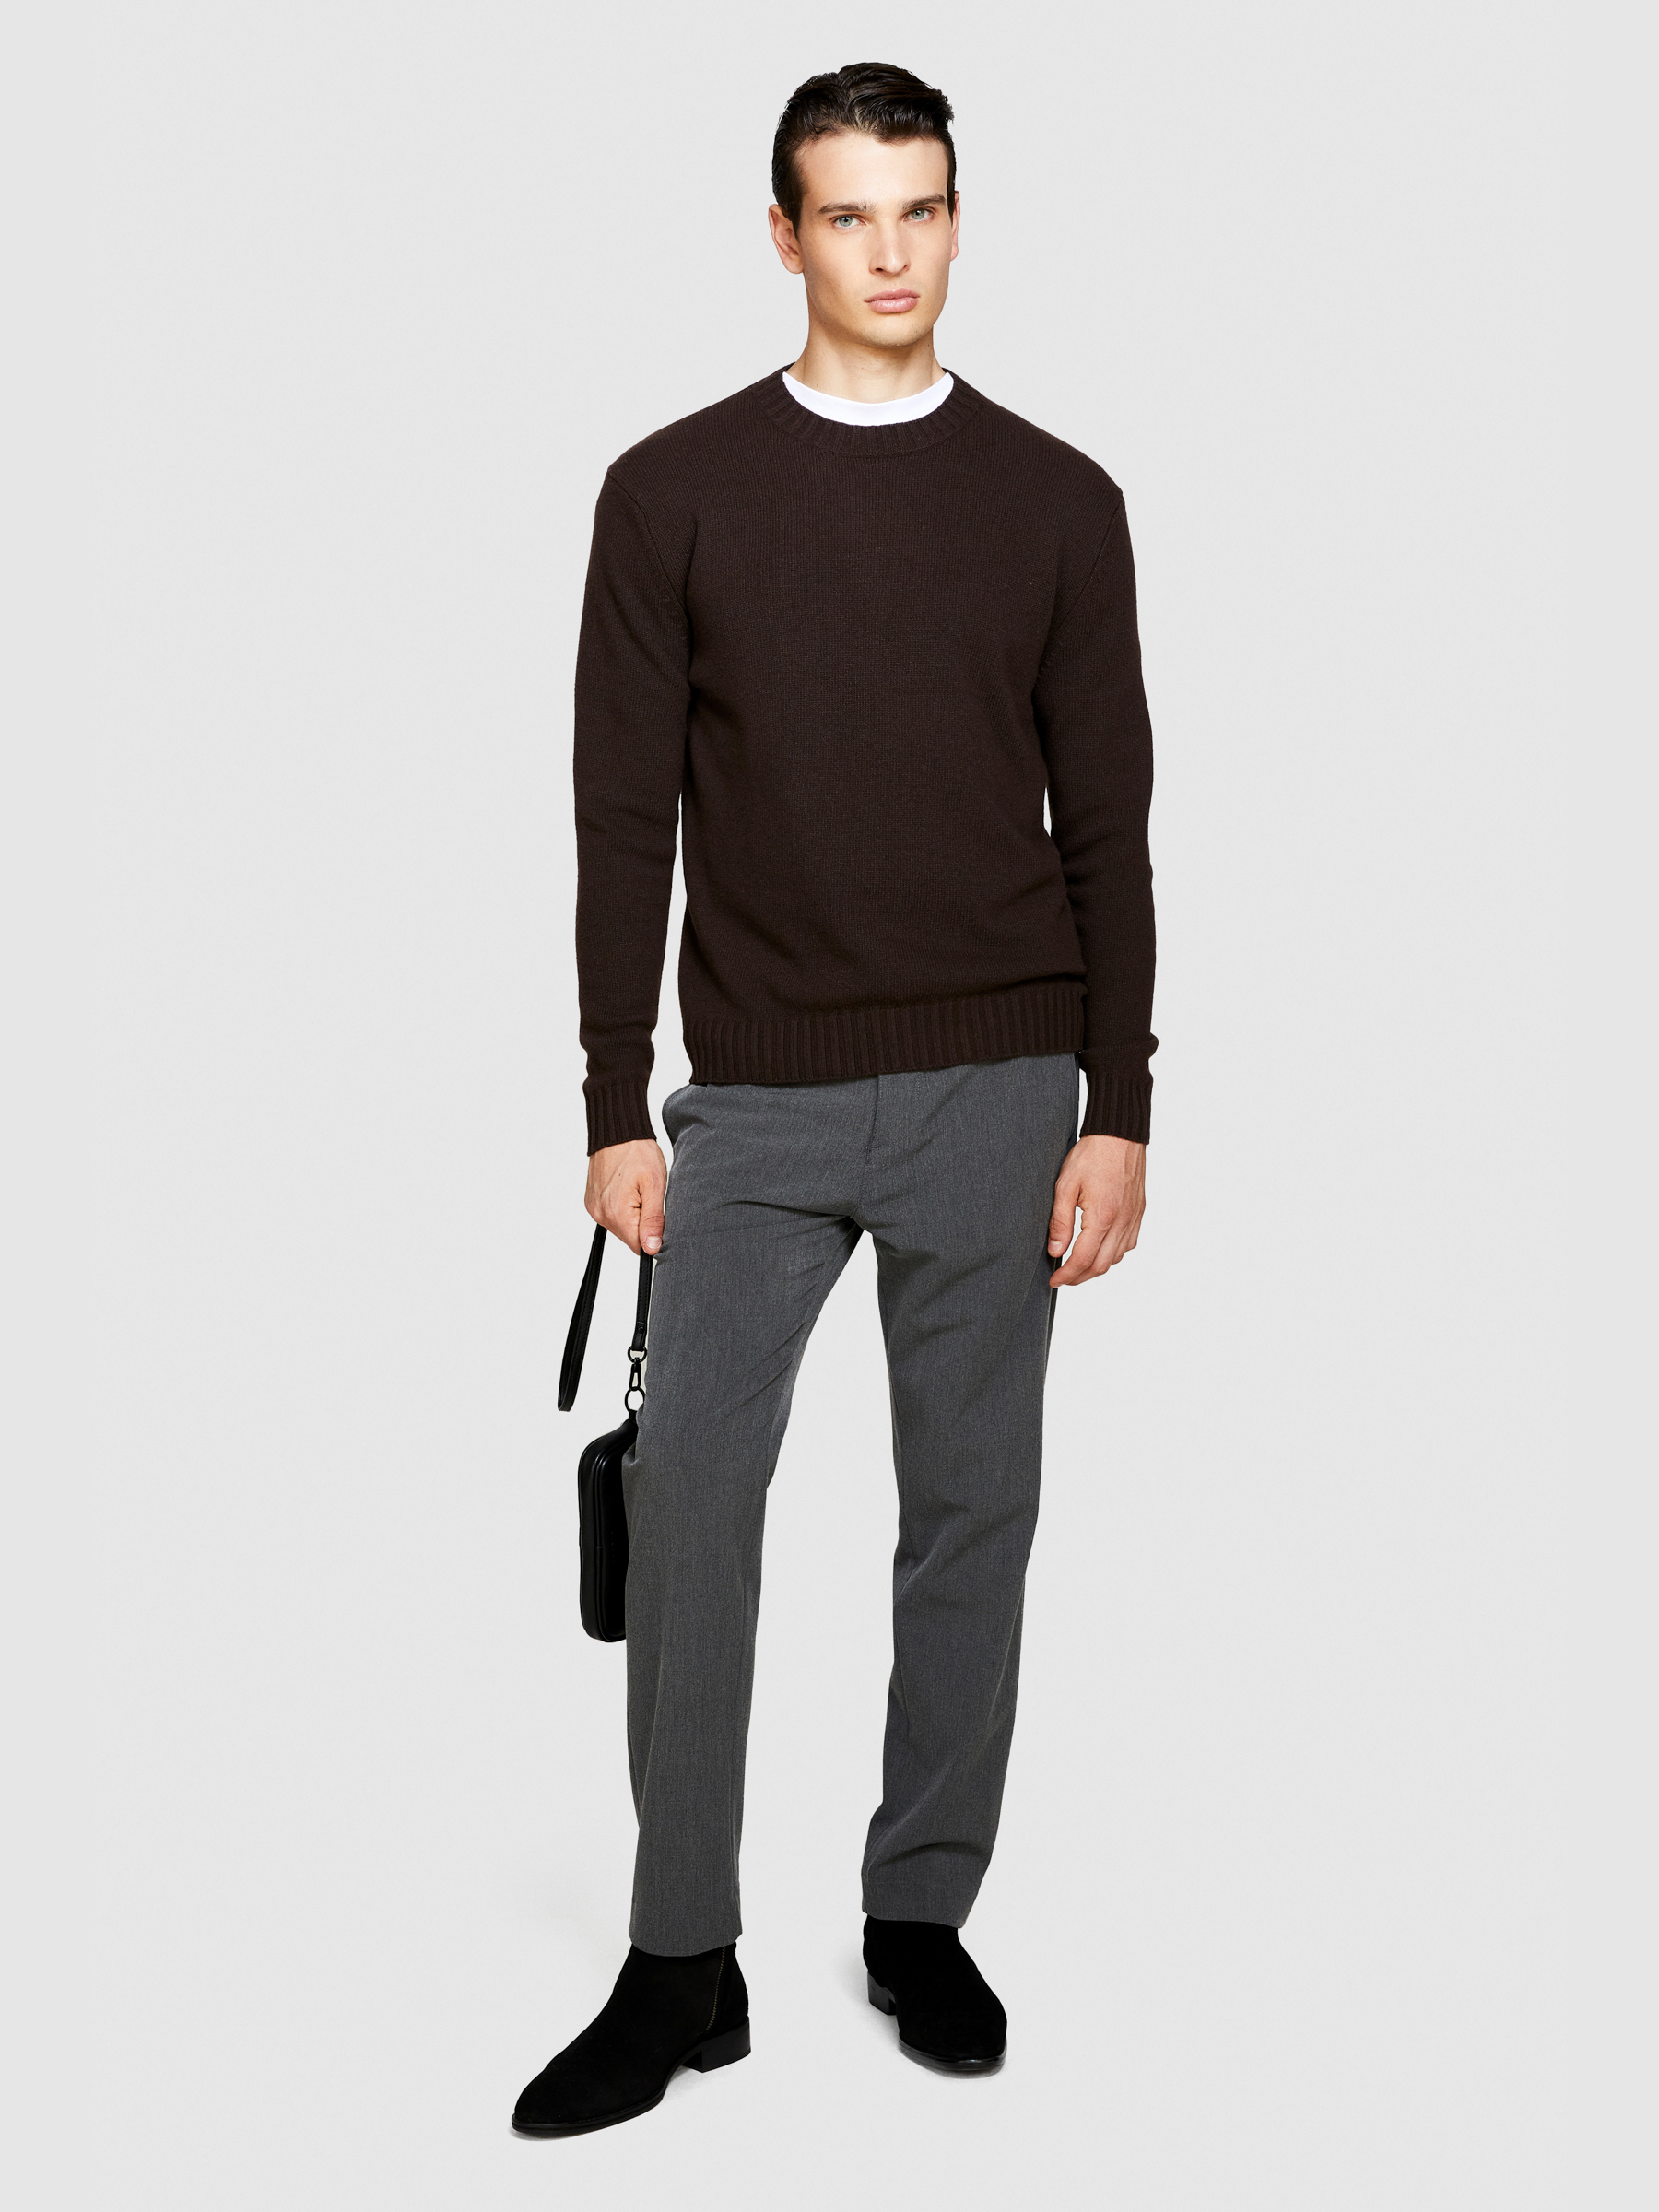 Sisley - Crew Neck Sweater In Wool Blend, Man, Dark Brown, Size: EL